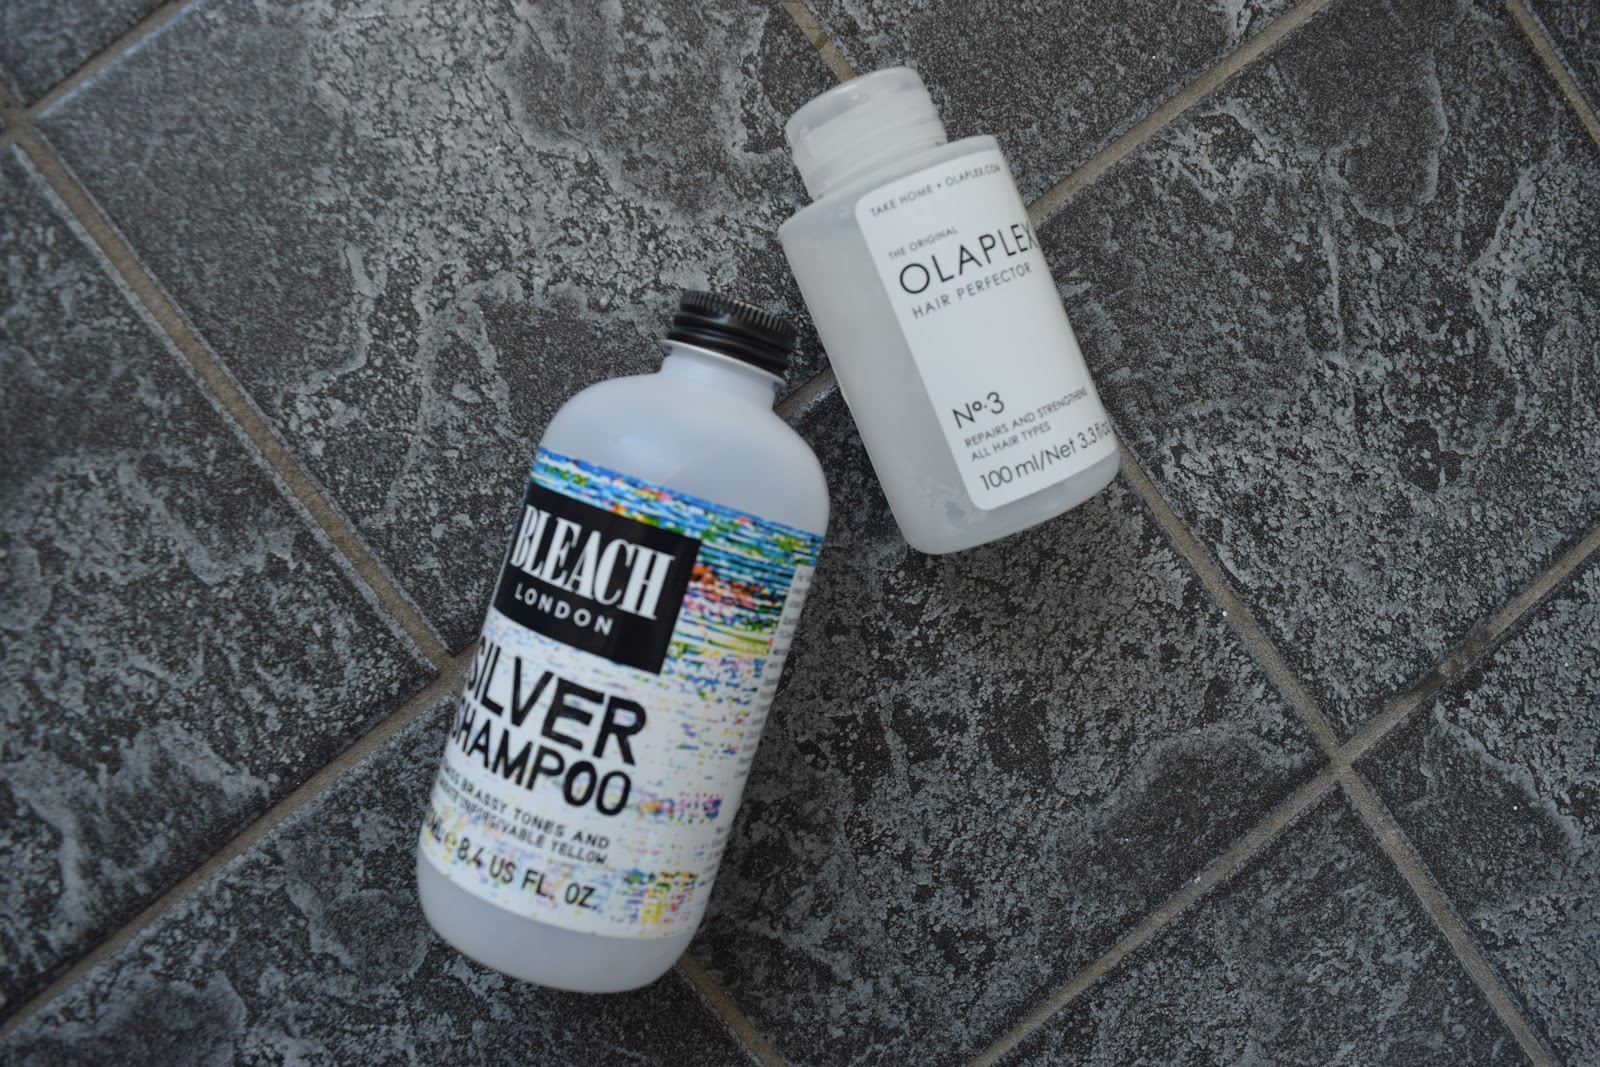 Bleach London Silver Shampoo and Olaplex no 3 on a tiled floor